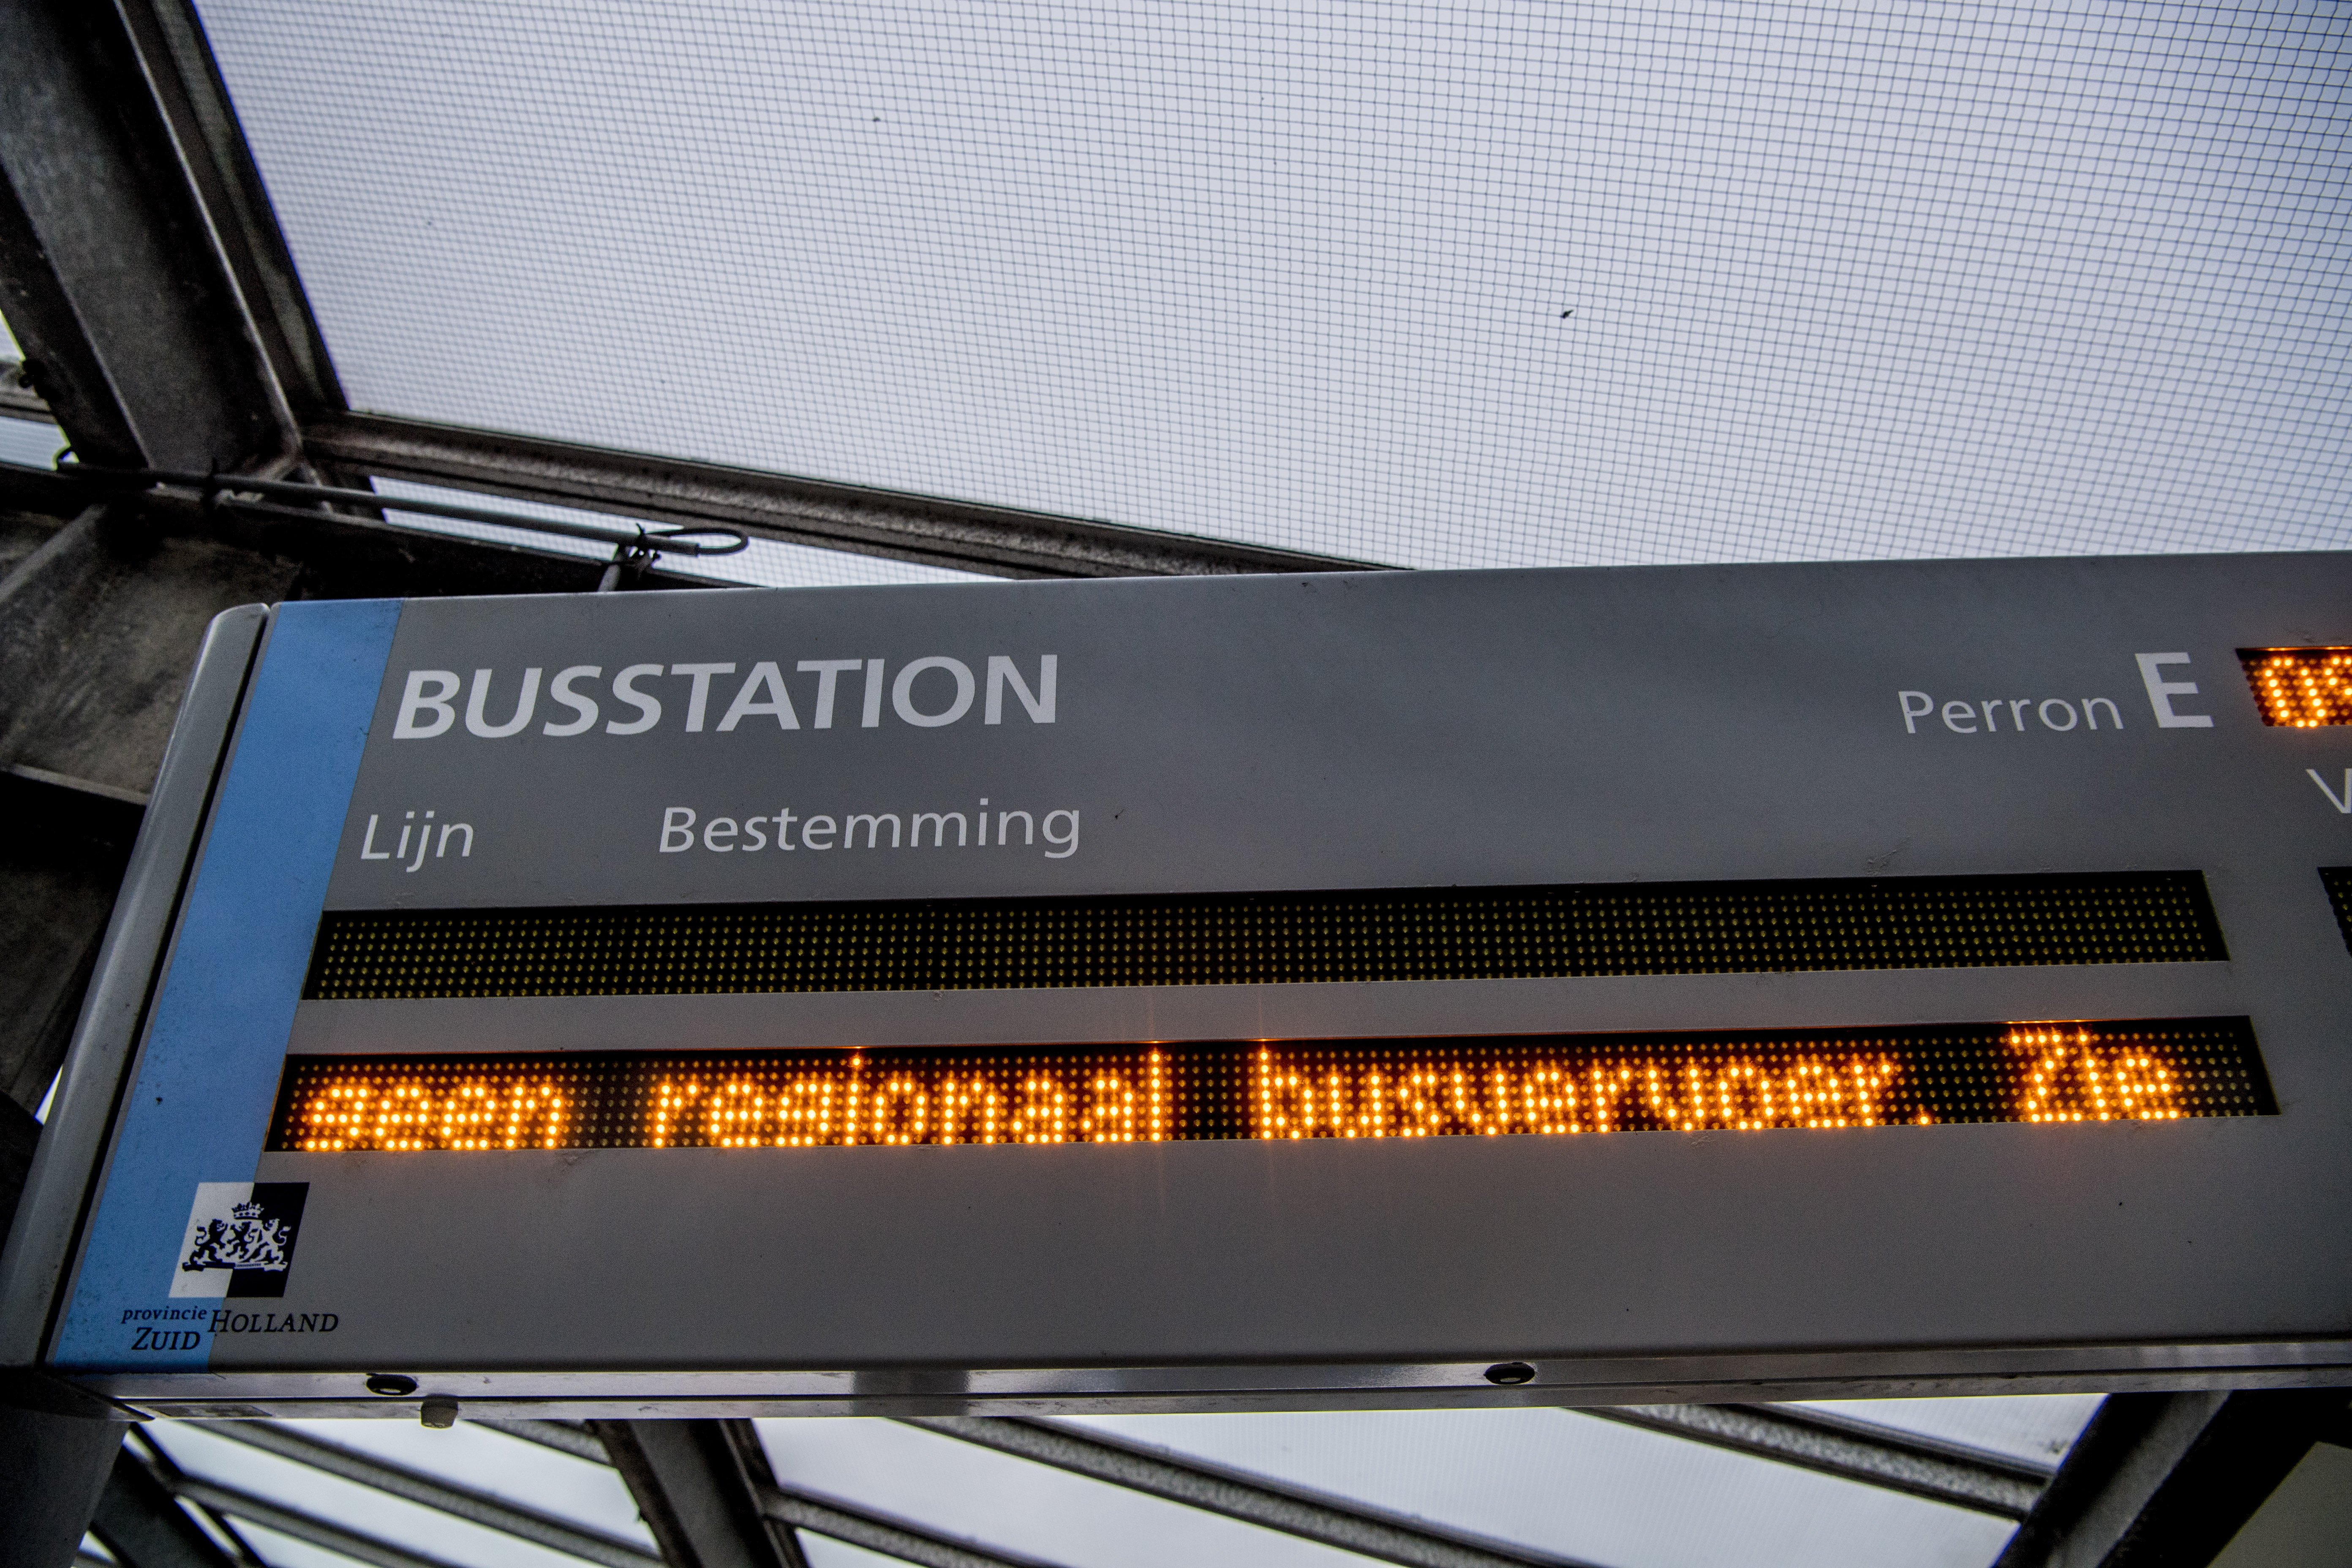 2018-01-04 09:14:28 HEINENOORD - Een informatiebord op een leeg busstation. In het hele land rijden geen of minder streekbussen en regionale treinen als gevolg van een staking. ANP ROBIN UTRECHT